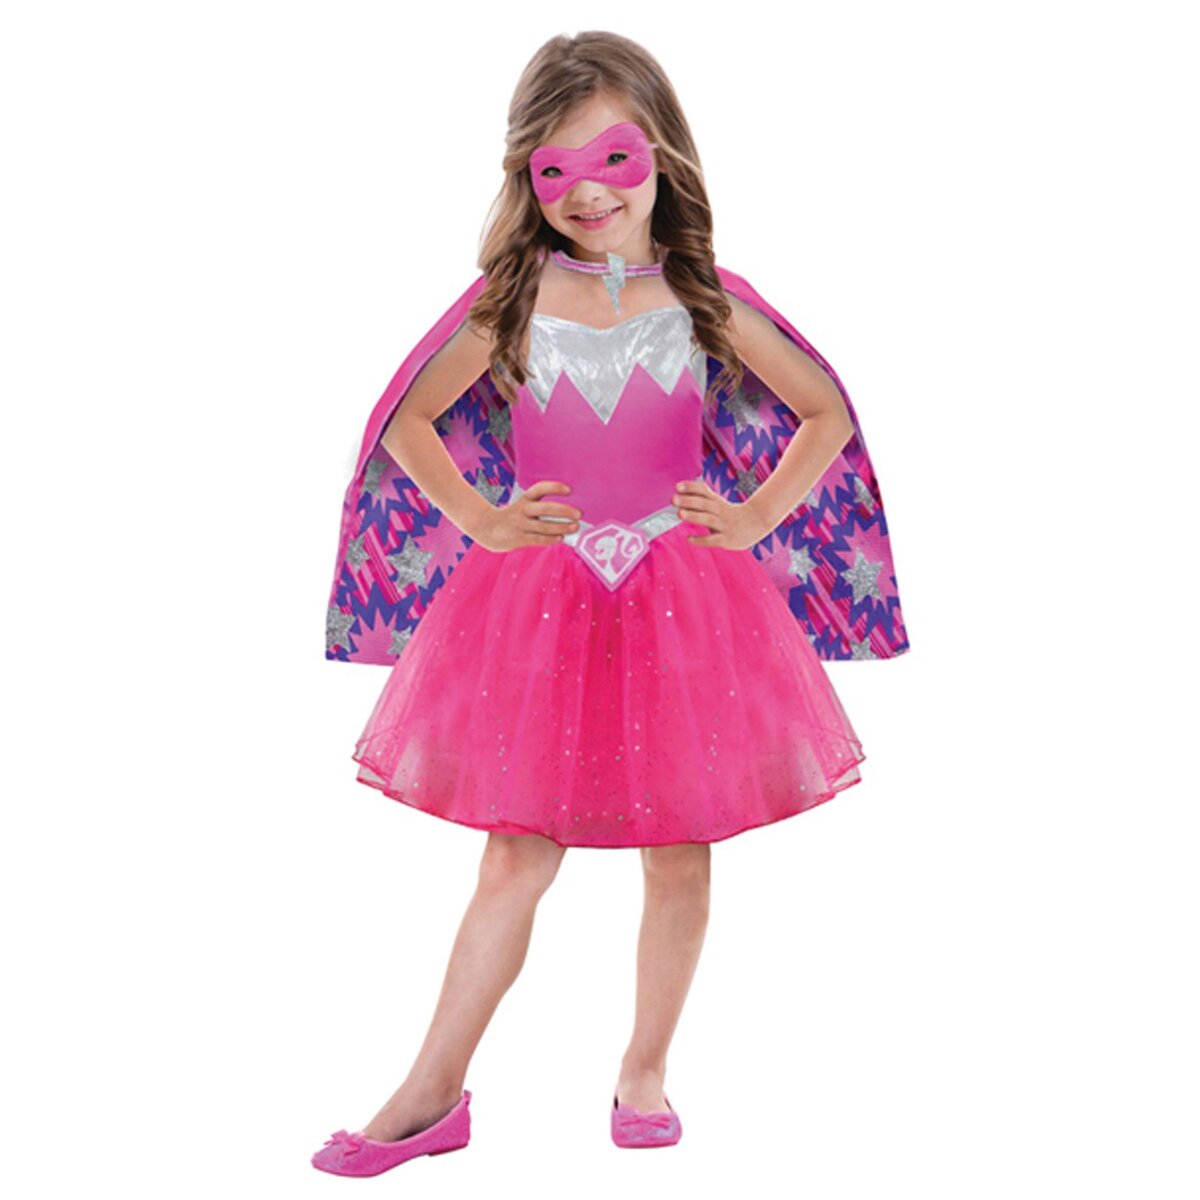 MATTEL Accessoire Barbie - Coiffeuse Barbie Super Princesse pas